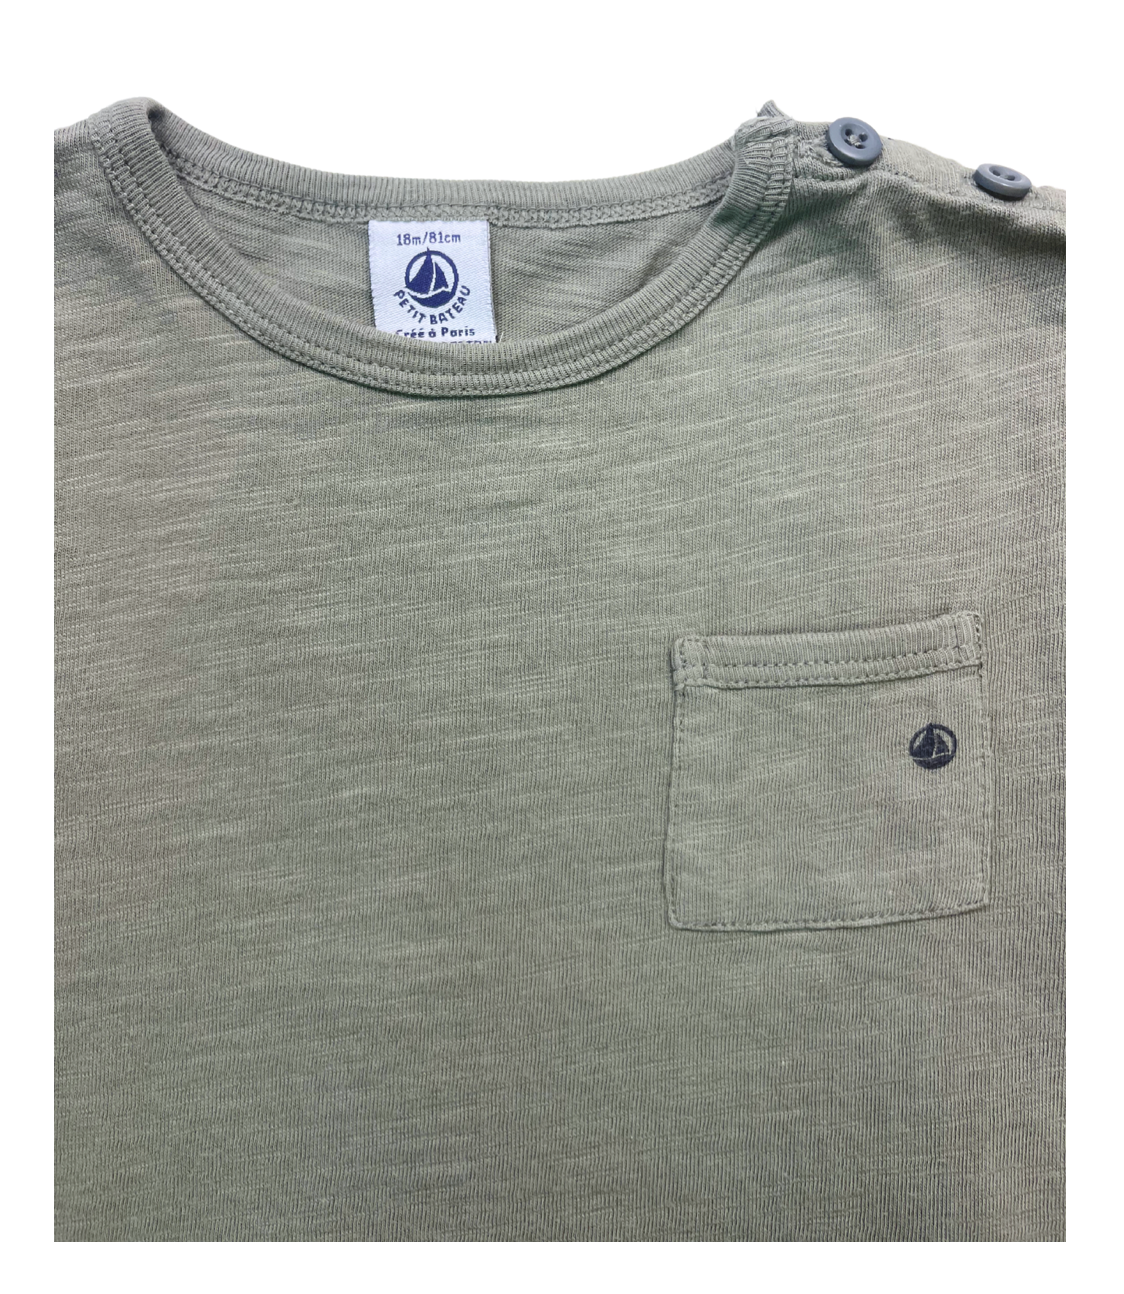 PETIT BATEAU - T-shirt en coton kaki - 18 mois